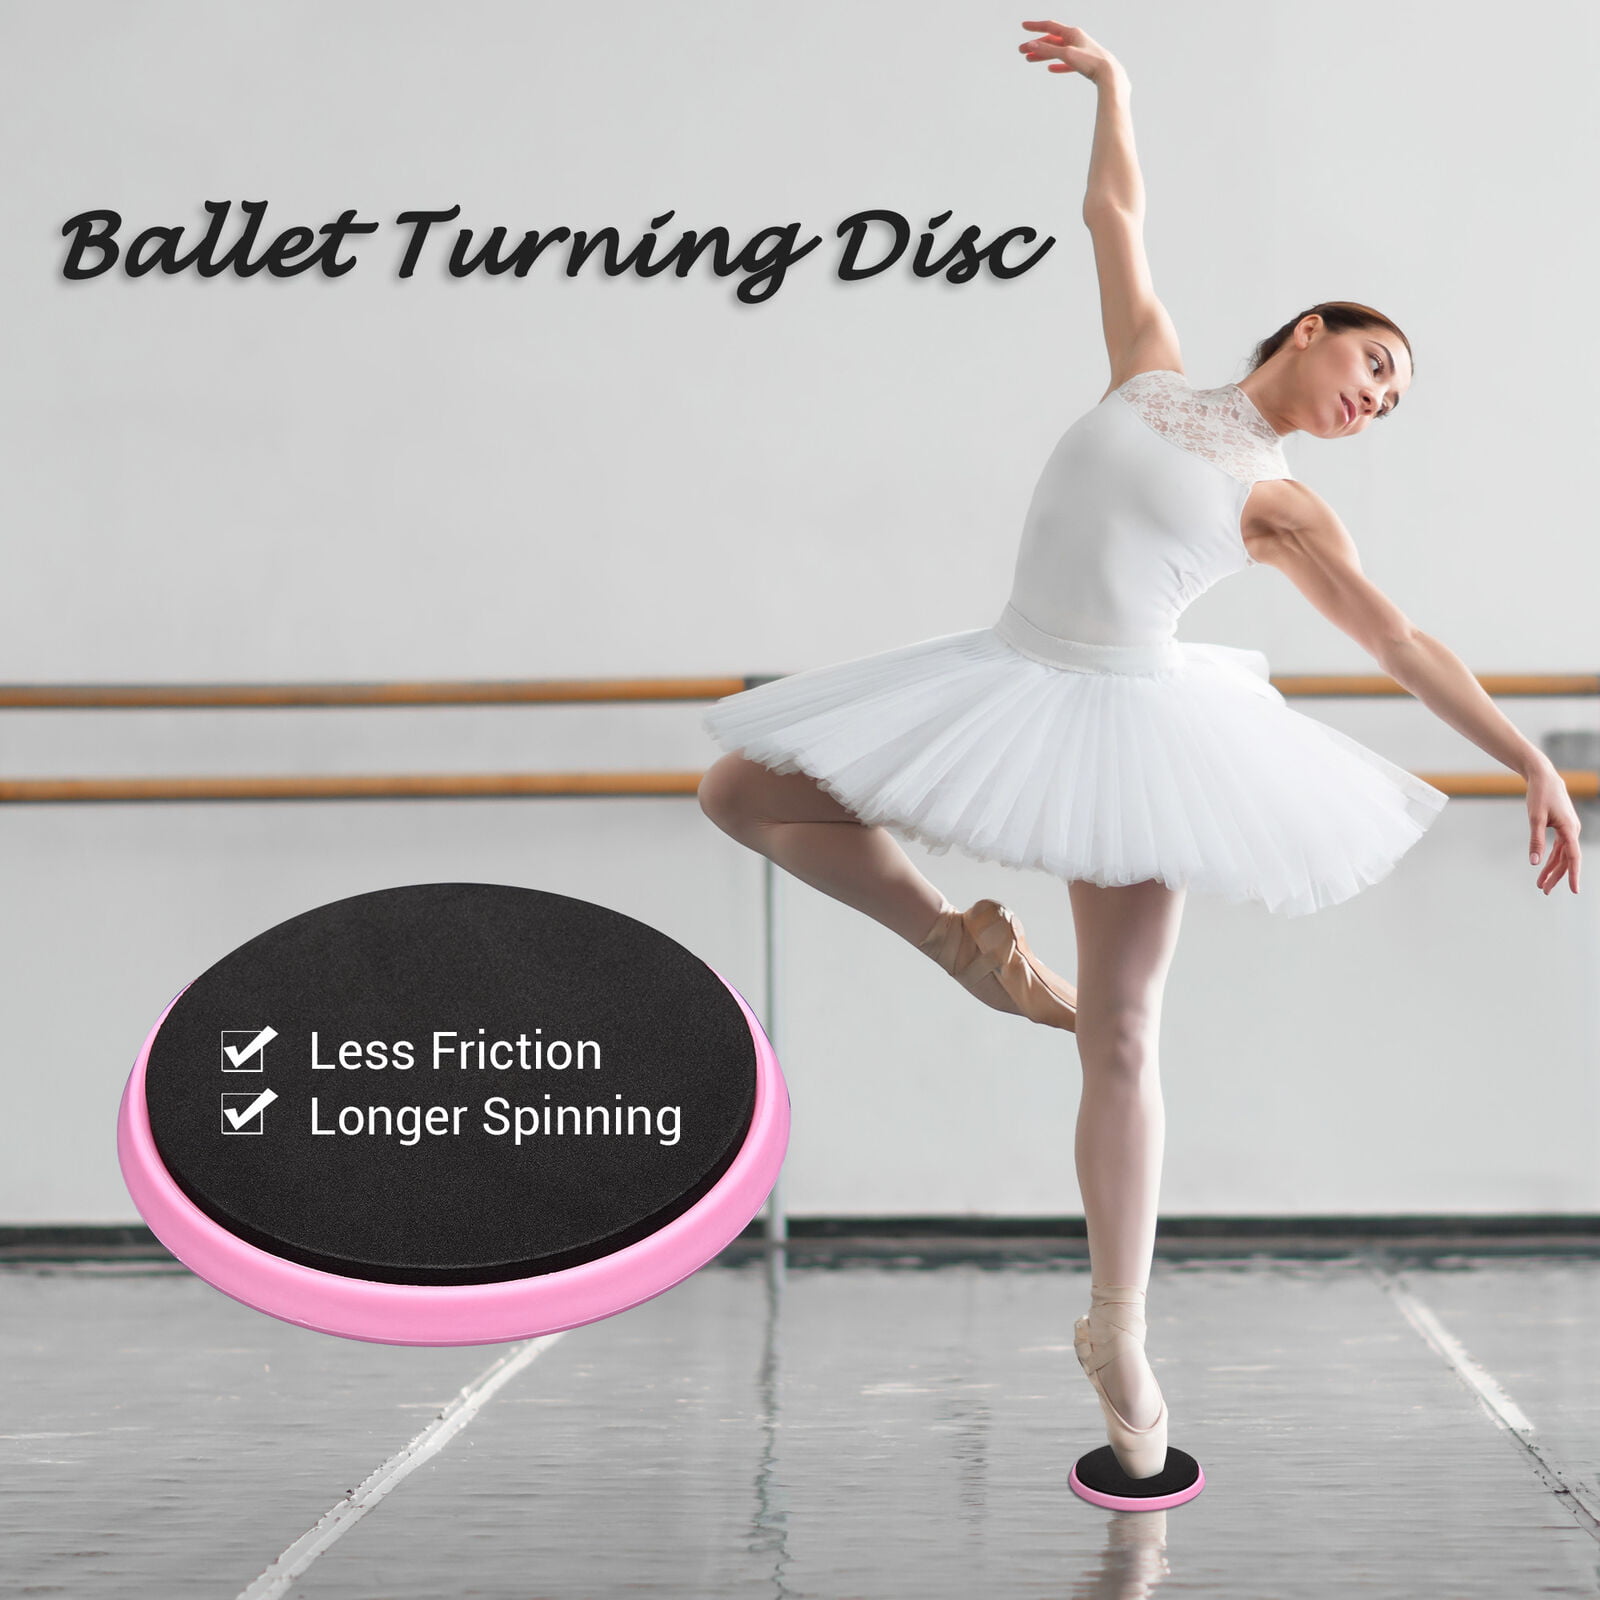 TURNING DISC DANCERS GYMNASTS BALLERINAS improve balance releve dance ballet 